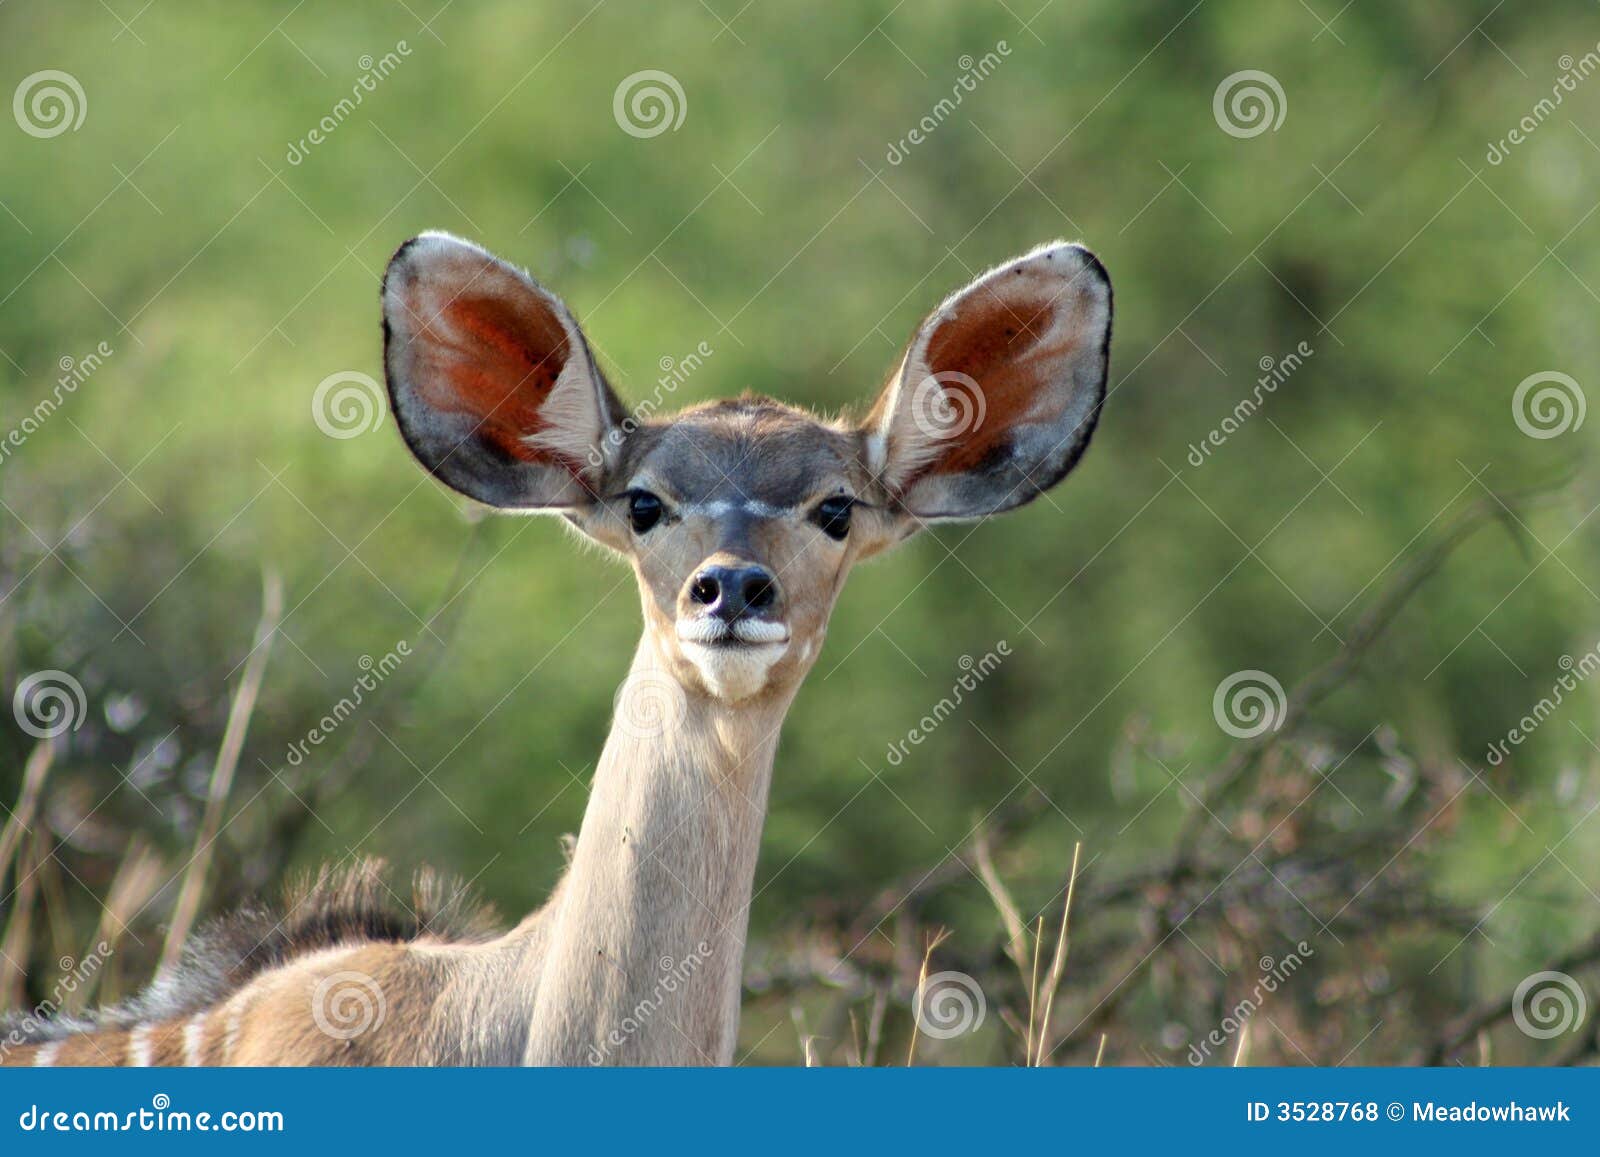 young kudu antelope